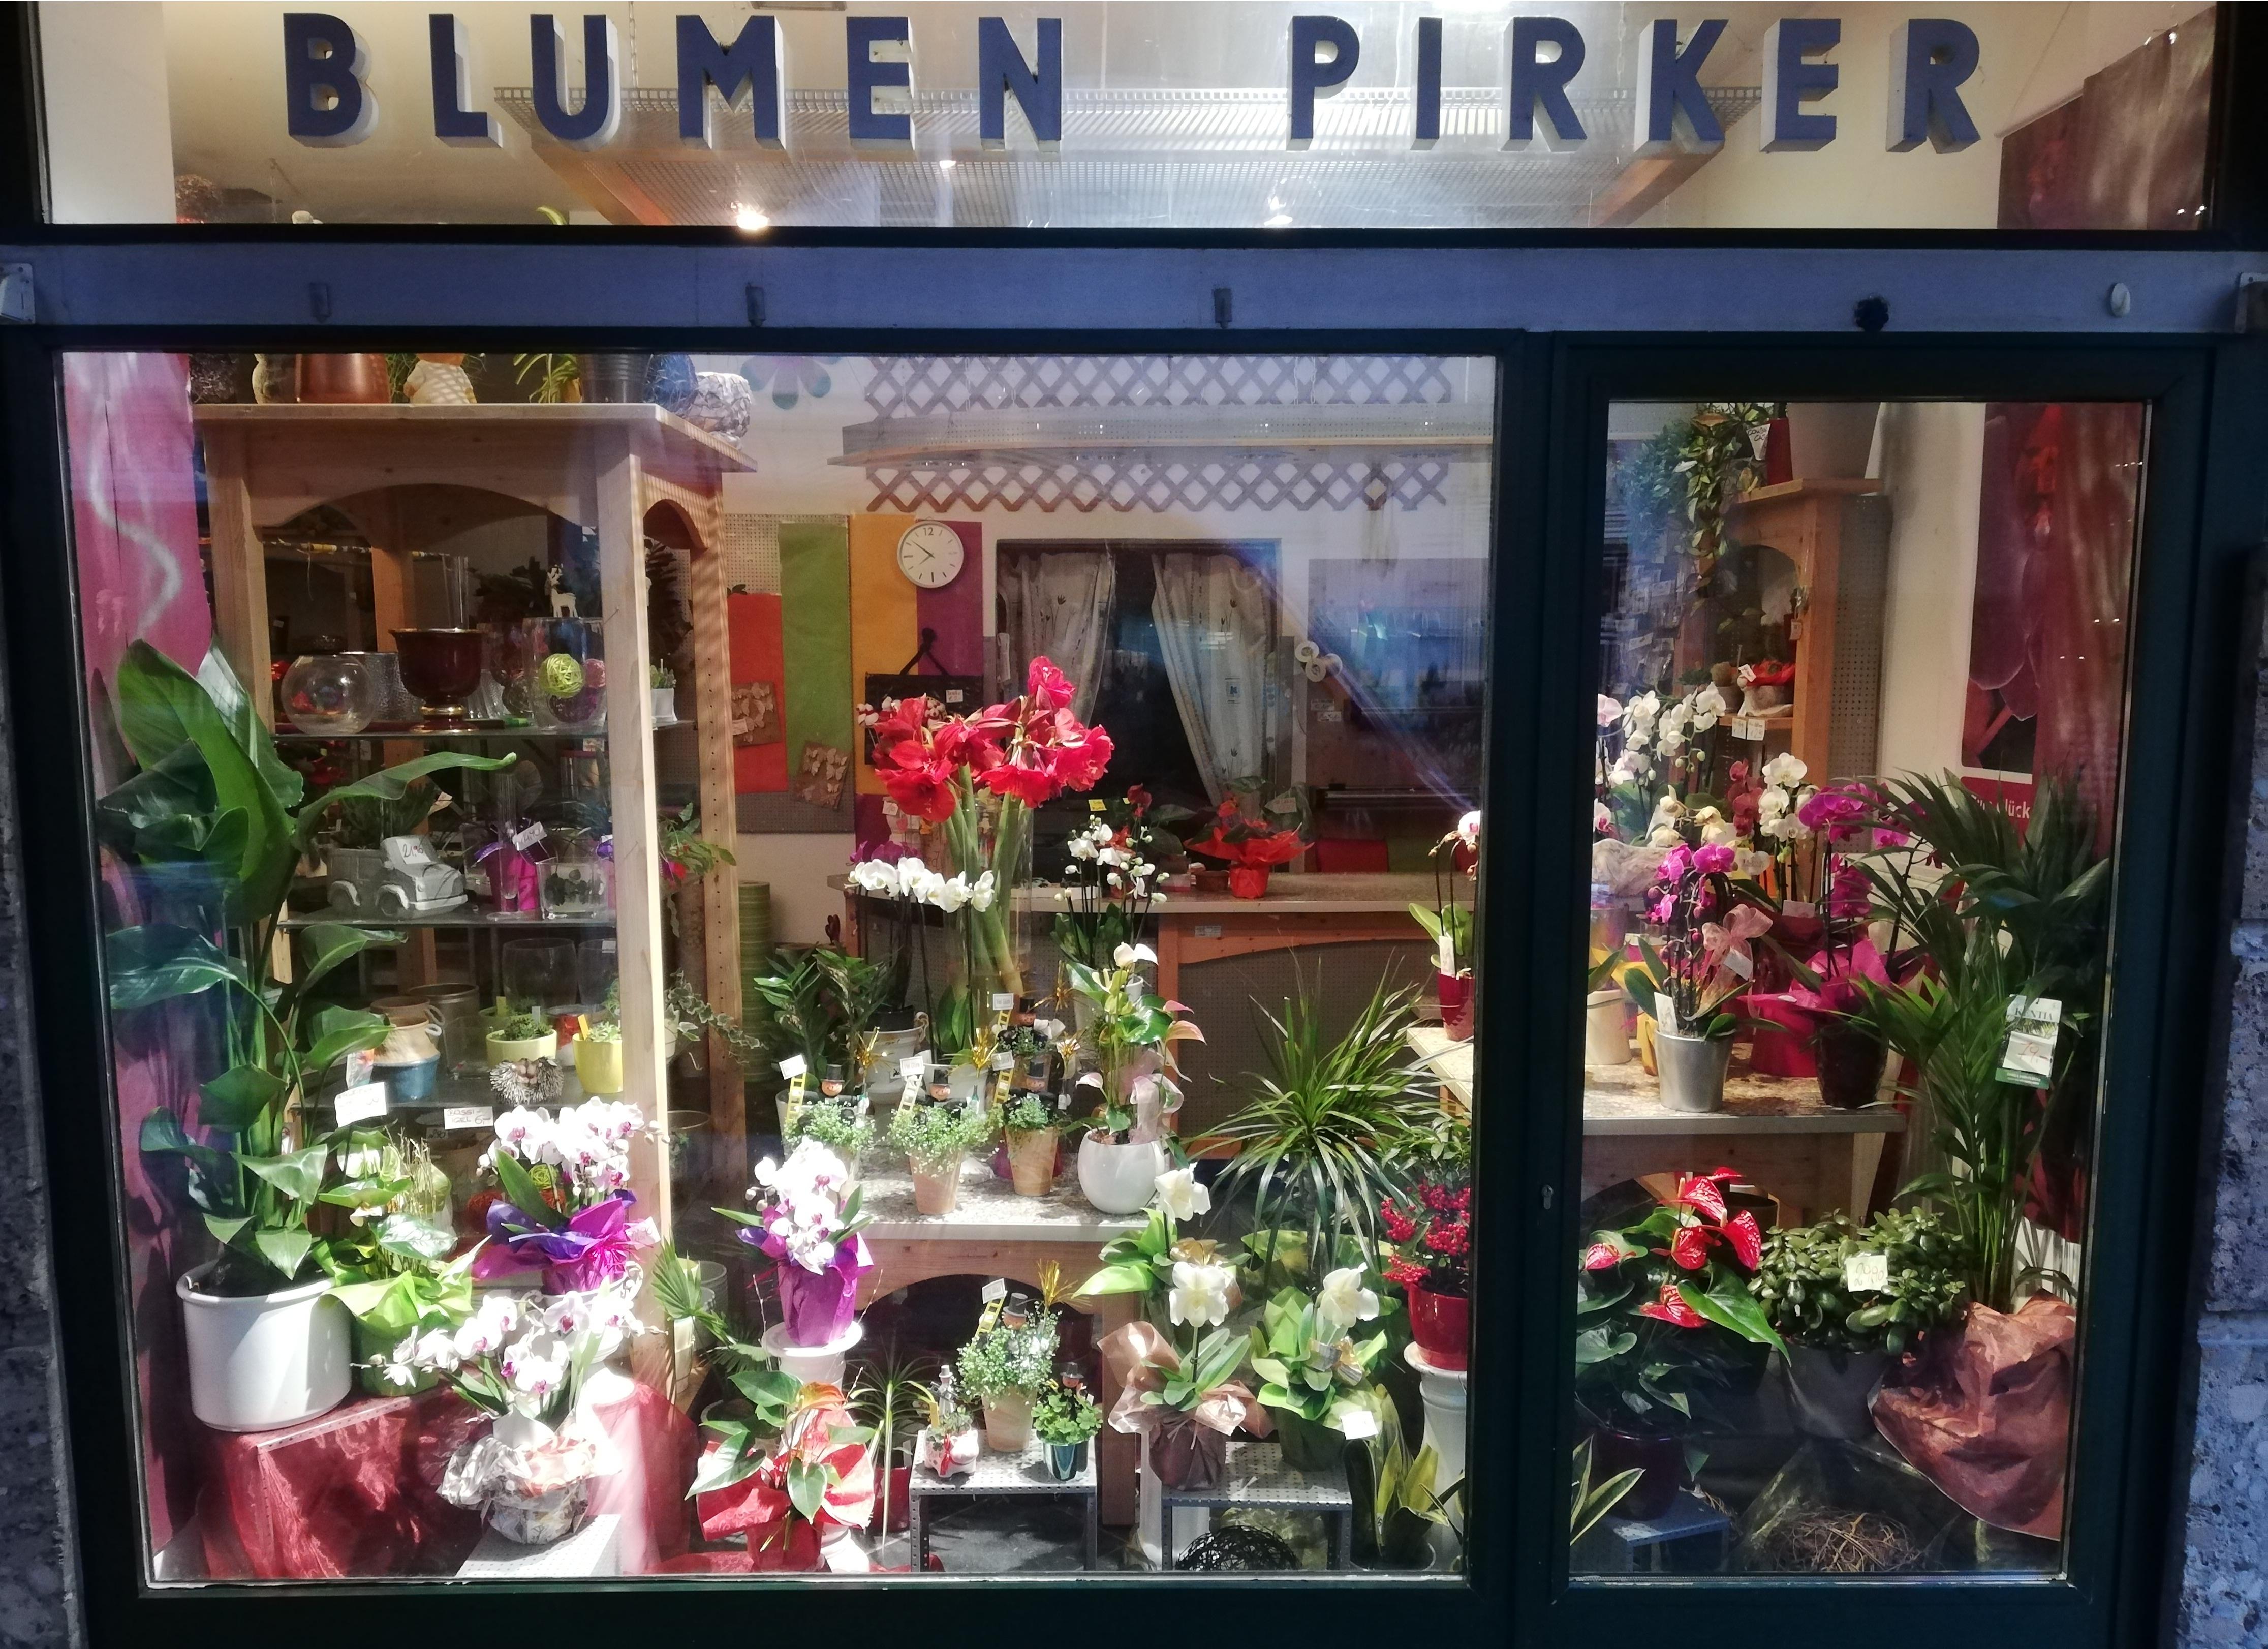 Bilder Blumen Pirker